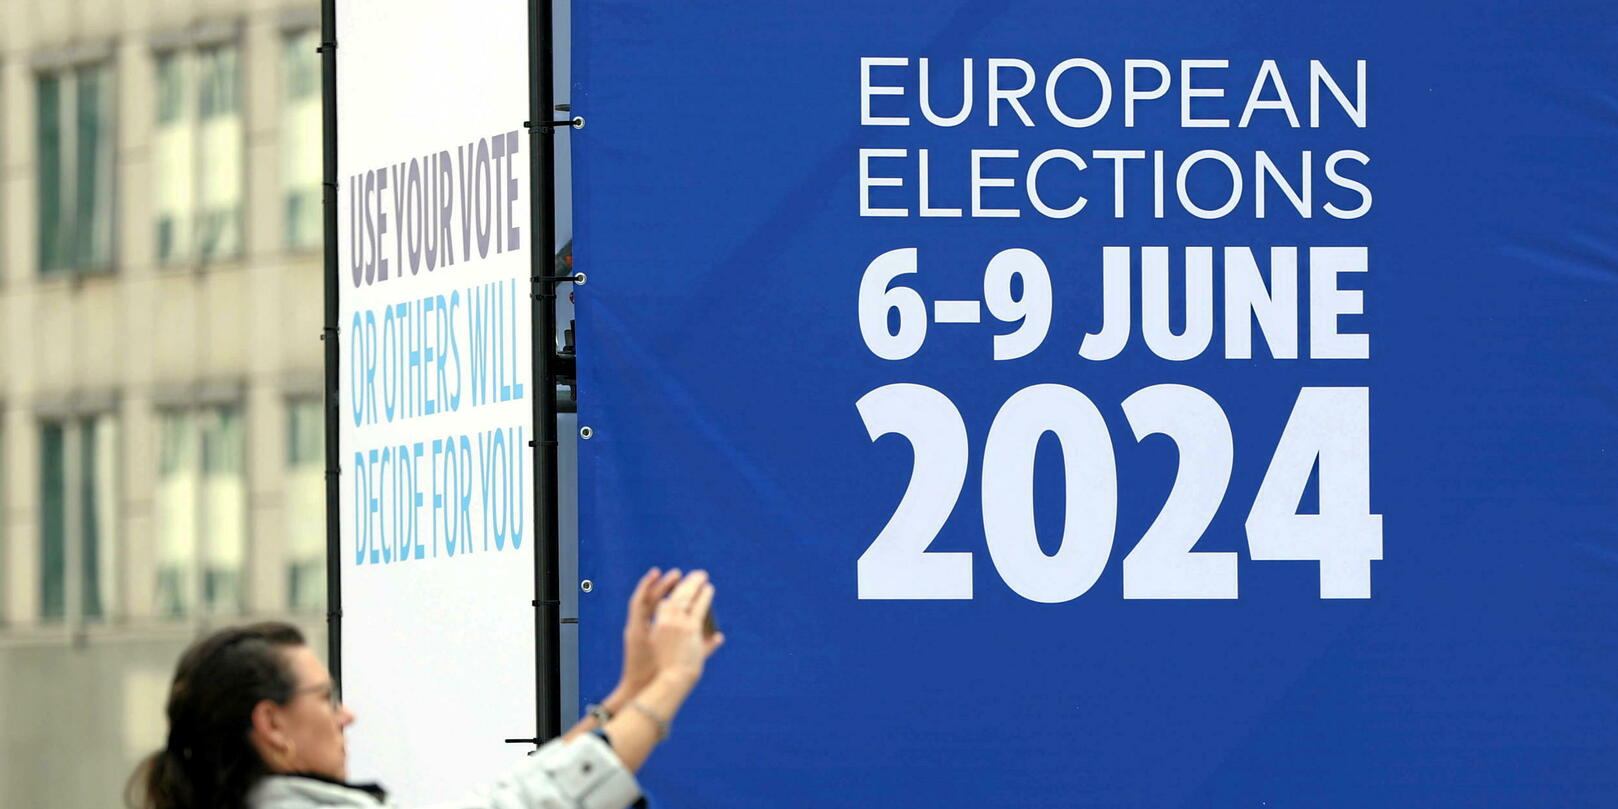 Européennes : comment s’organisent les élections dans les 27 États membres ?